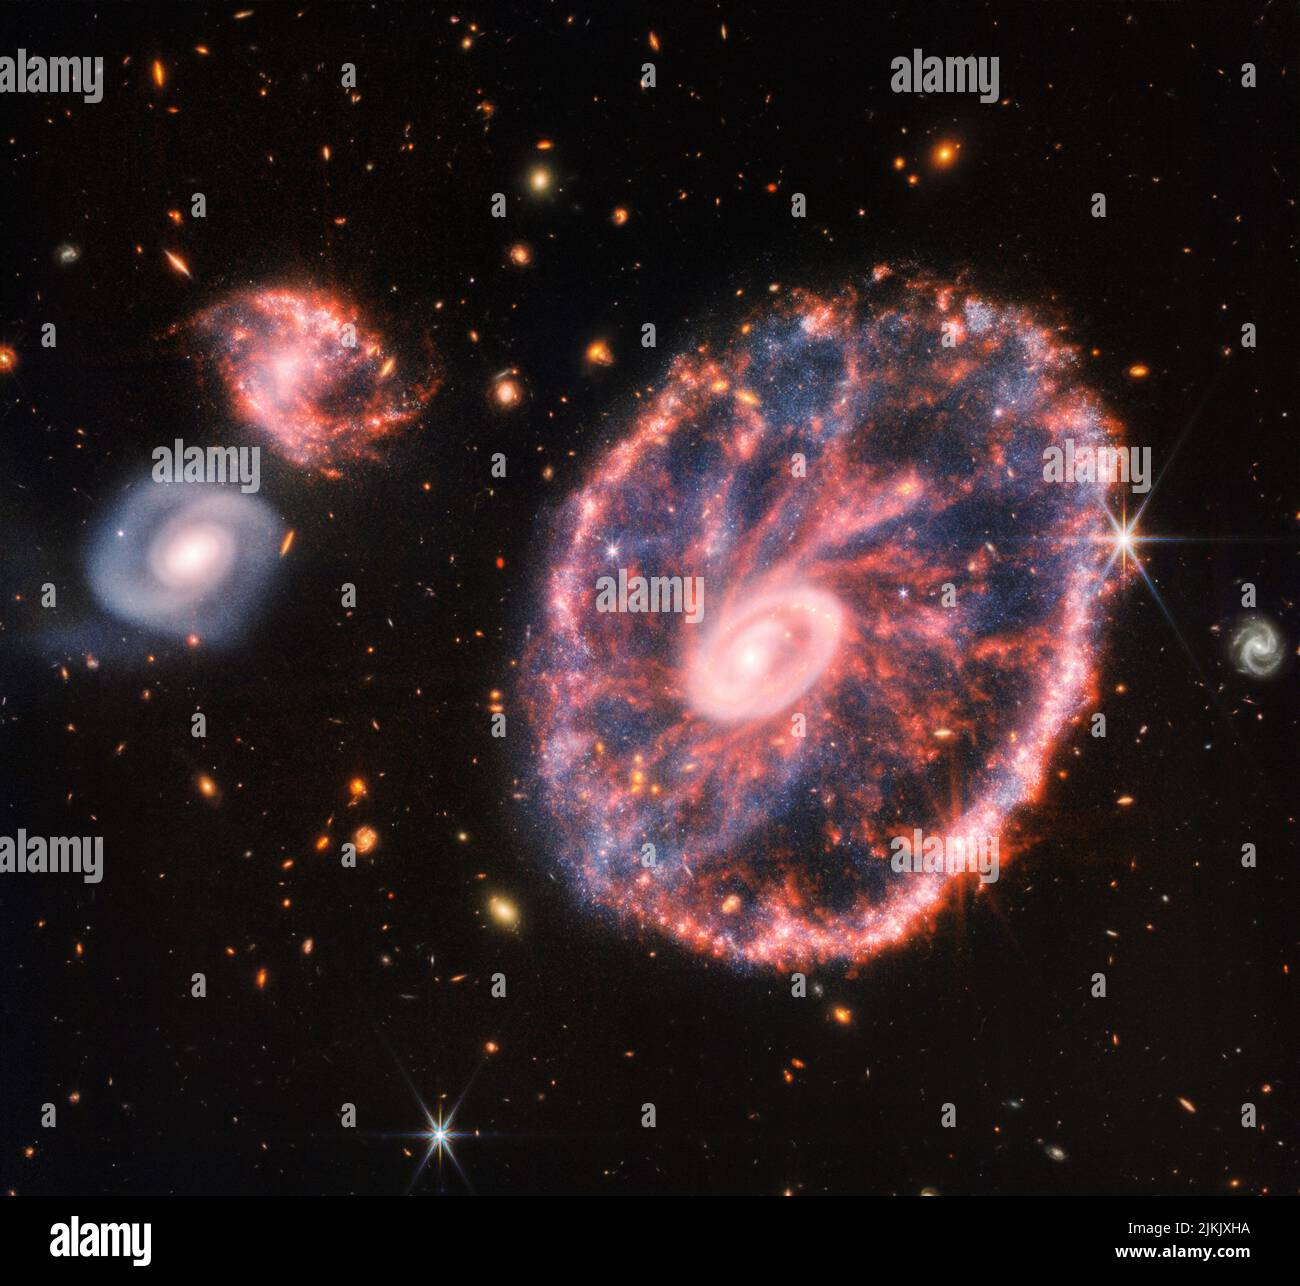 Questa immagine del Cartwheel e delle sue galassie complementari è un composito di Webbâs Near-Infrared Camera (NIRCam) e Mid-Infrared Instrument (MIRI), che rivela dettagli difficili da vedere solo nelle singole immagini. Questa galassia si è formata come risultato di una collisione ad alta velocità che si è verificata circa 400 milioni di anni fa. La ruota Cartwheel è composta da due anelli, un anello interno luminoso e un anello esterno colorato. Entrambi gli anelli si espandono verso l'esterno dal centro della collisione, come le onde d'urto. Tuttavia, nonostante l'impatto, gran parte del carattere della grande galassia a spirale che esisteva prima del co Foto Stock